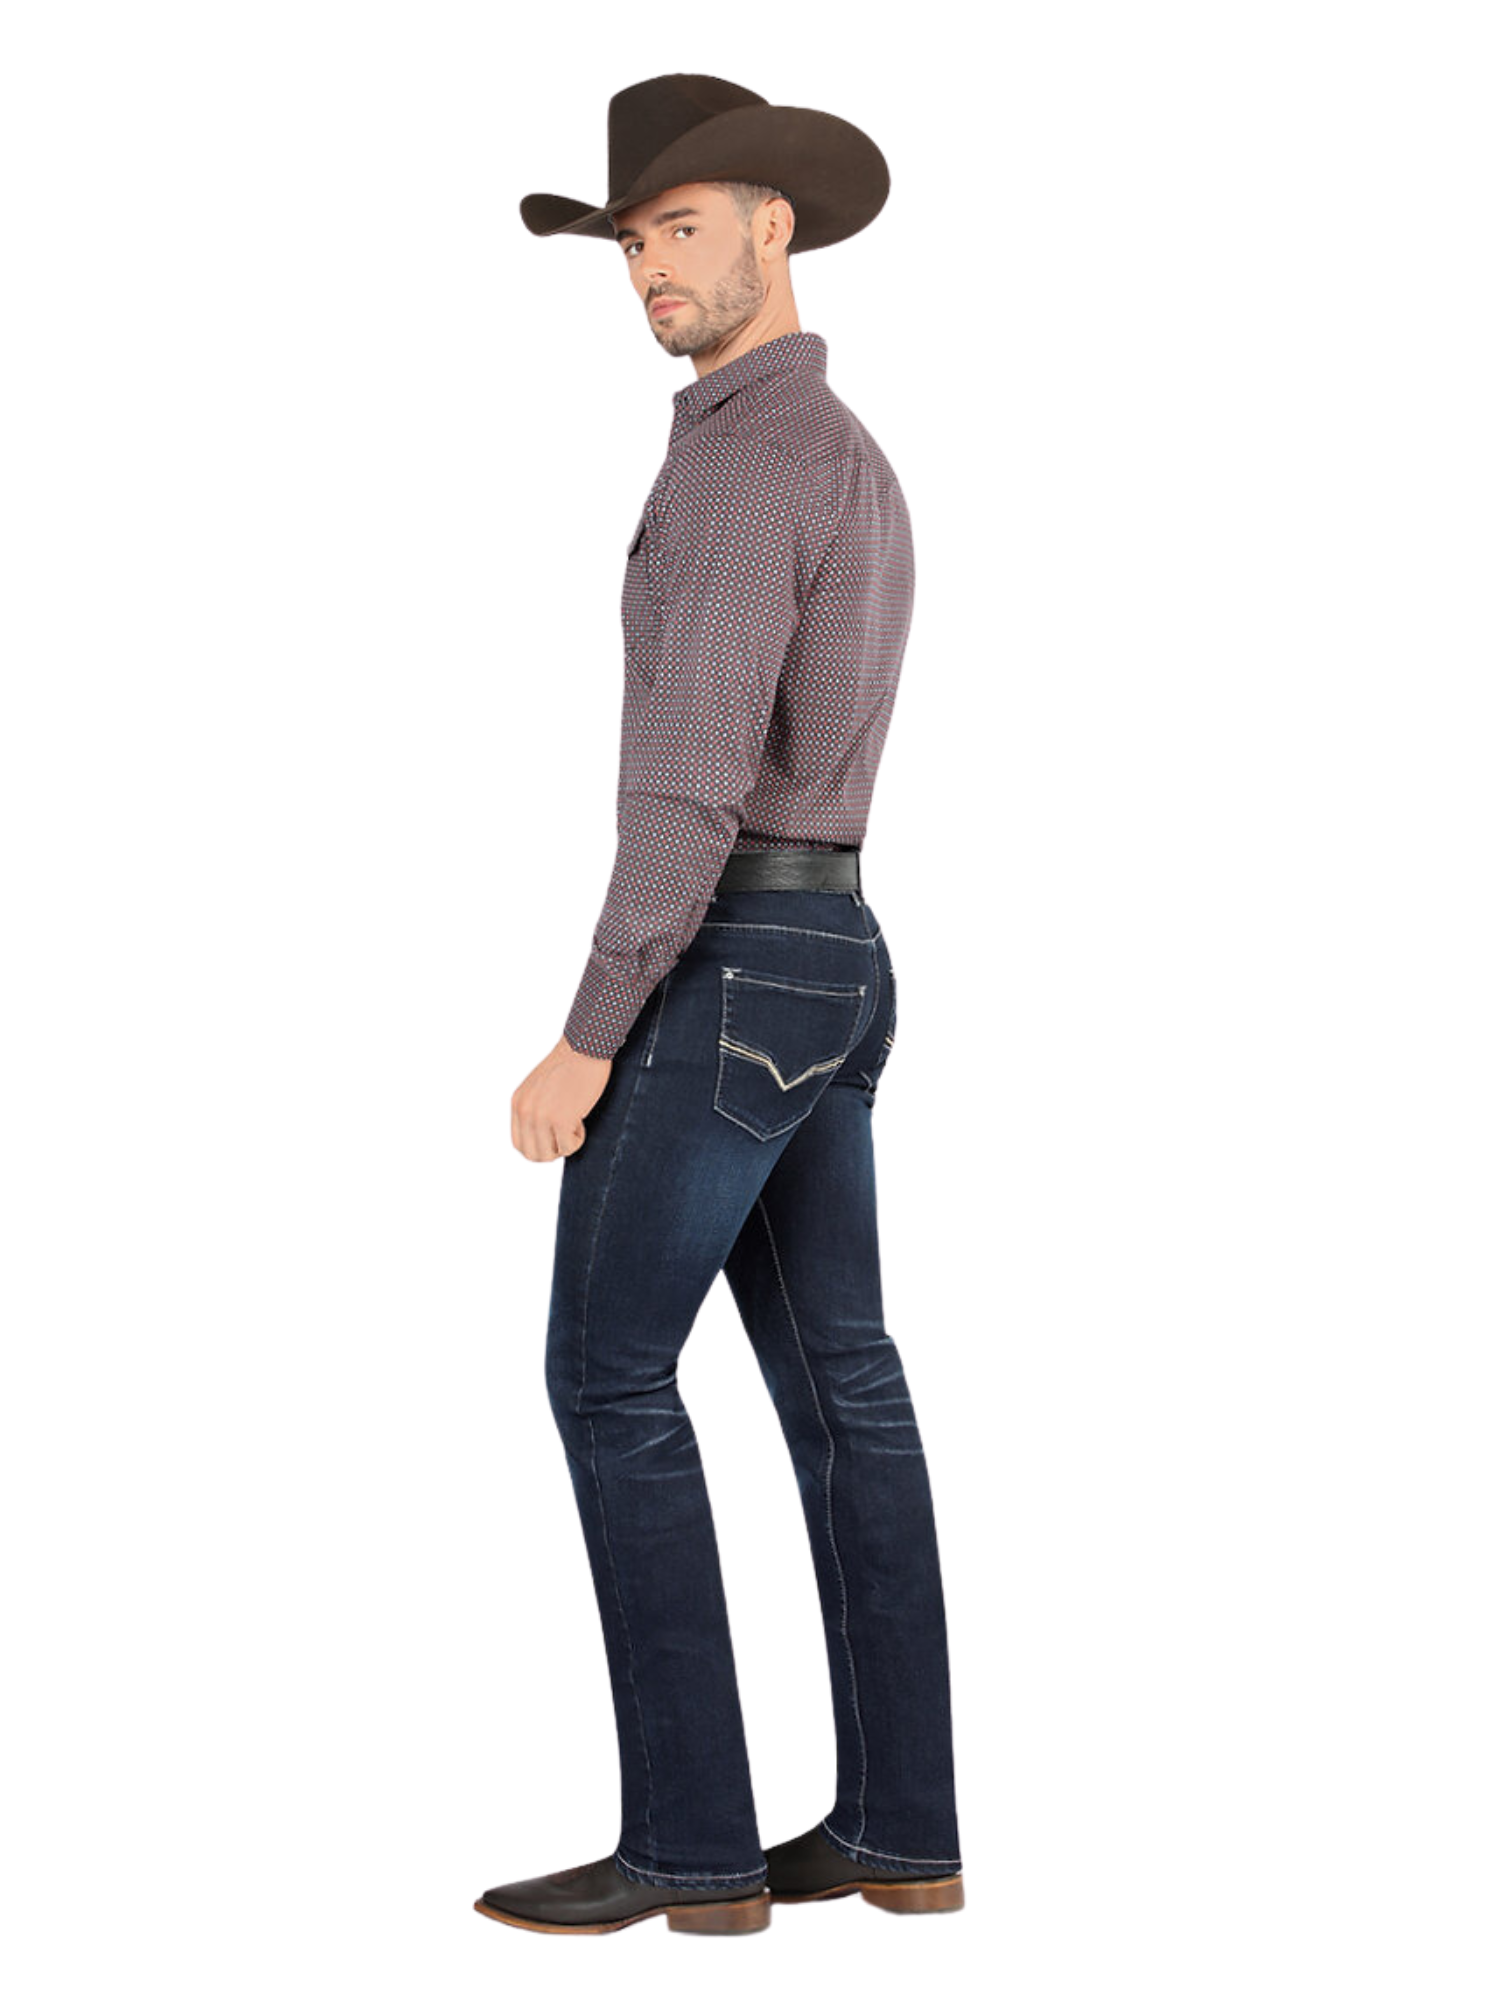 Pantalon Vaquero de Mezclilla Stretch para Hombre 'Montero' - ID: 5305 Pantalones de Vaquero Montero 